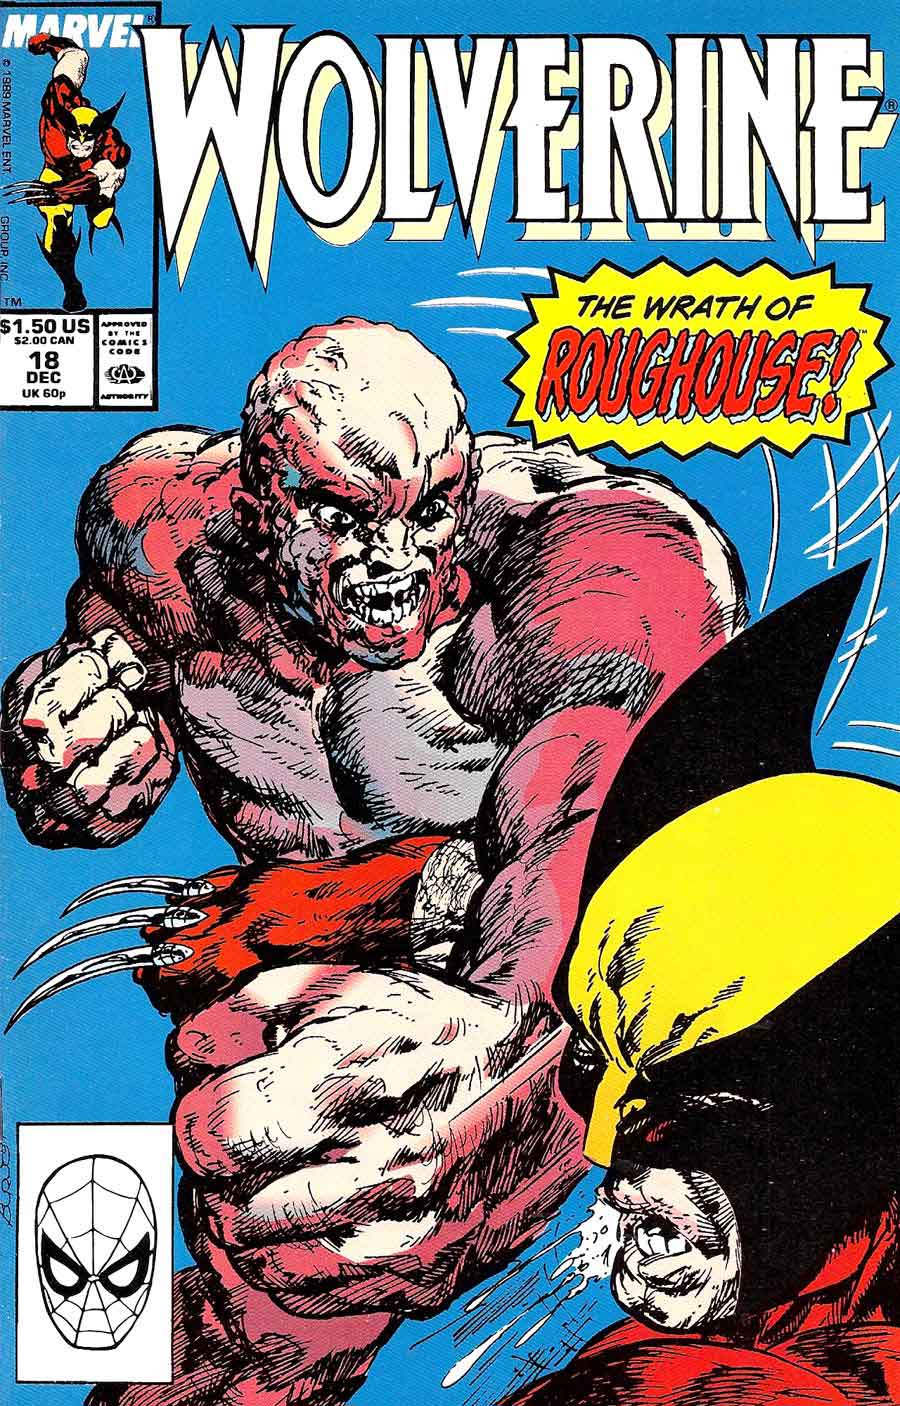 Wolverine v2 #18 marvel 1980s comic book cover art by John Byrne